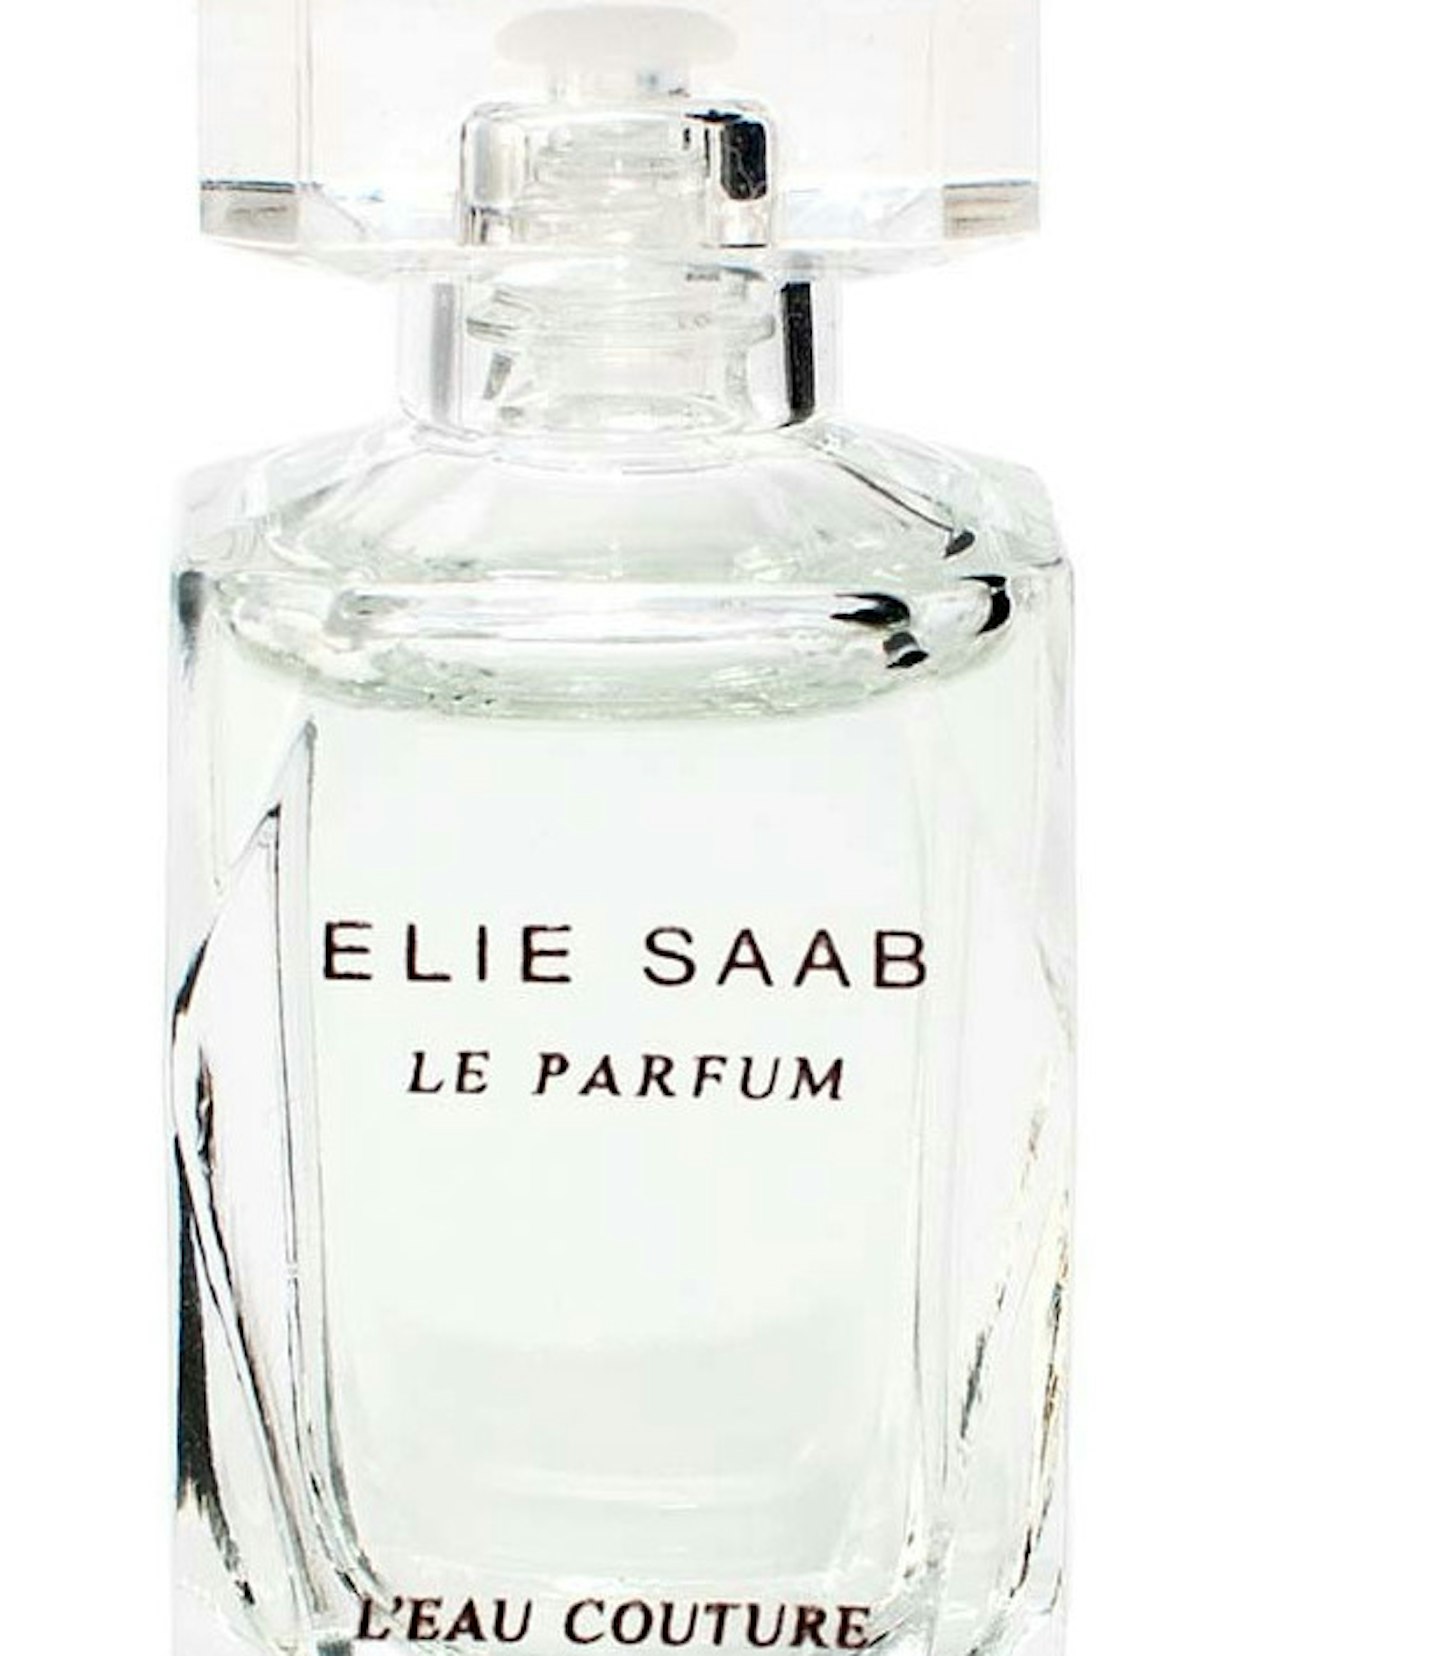 Ellie Saab L'eau Couture